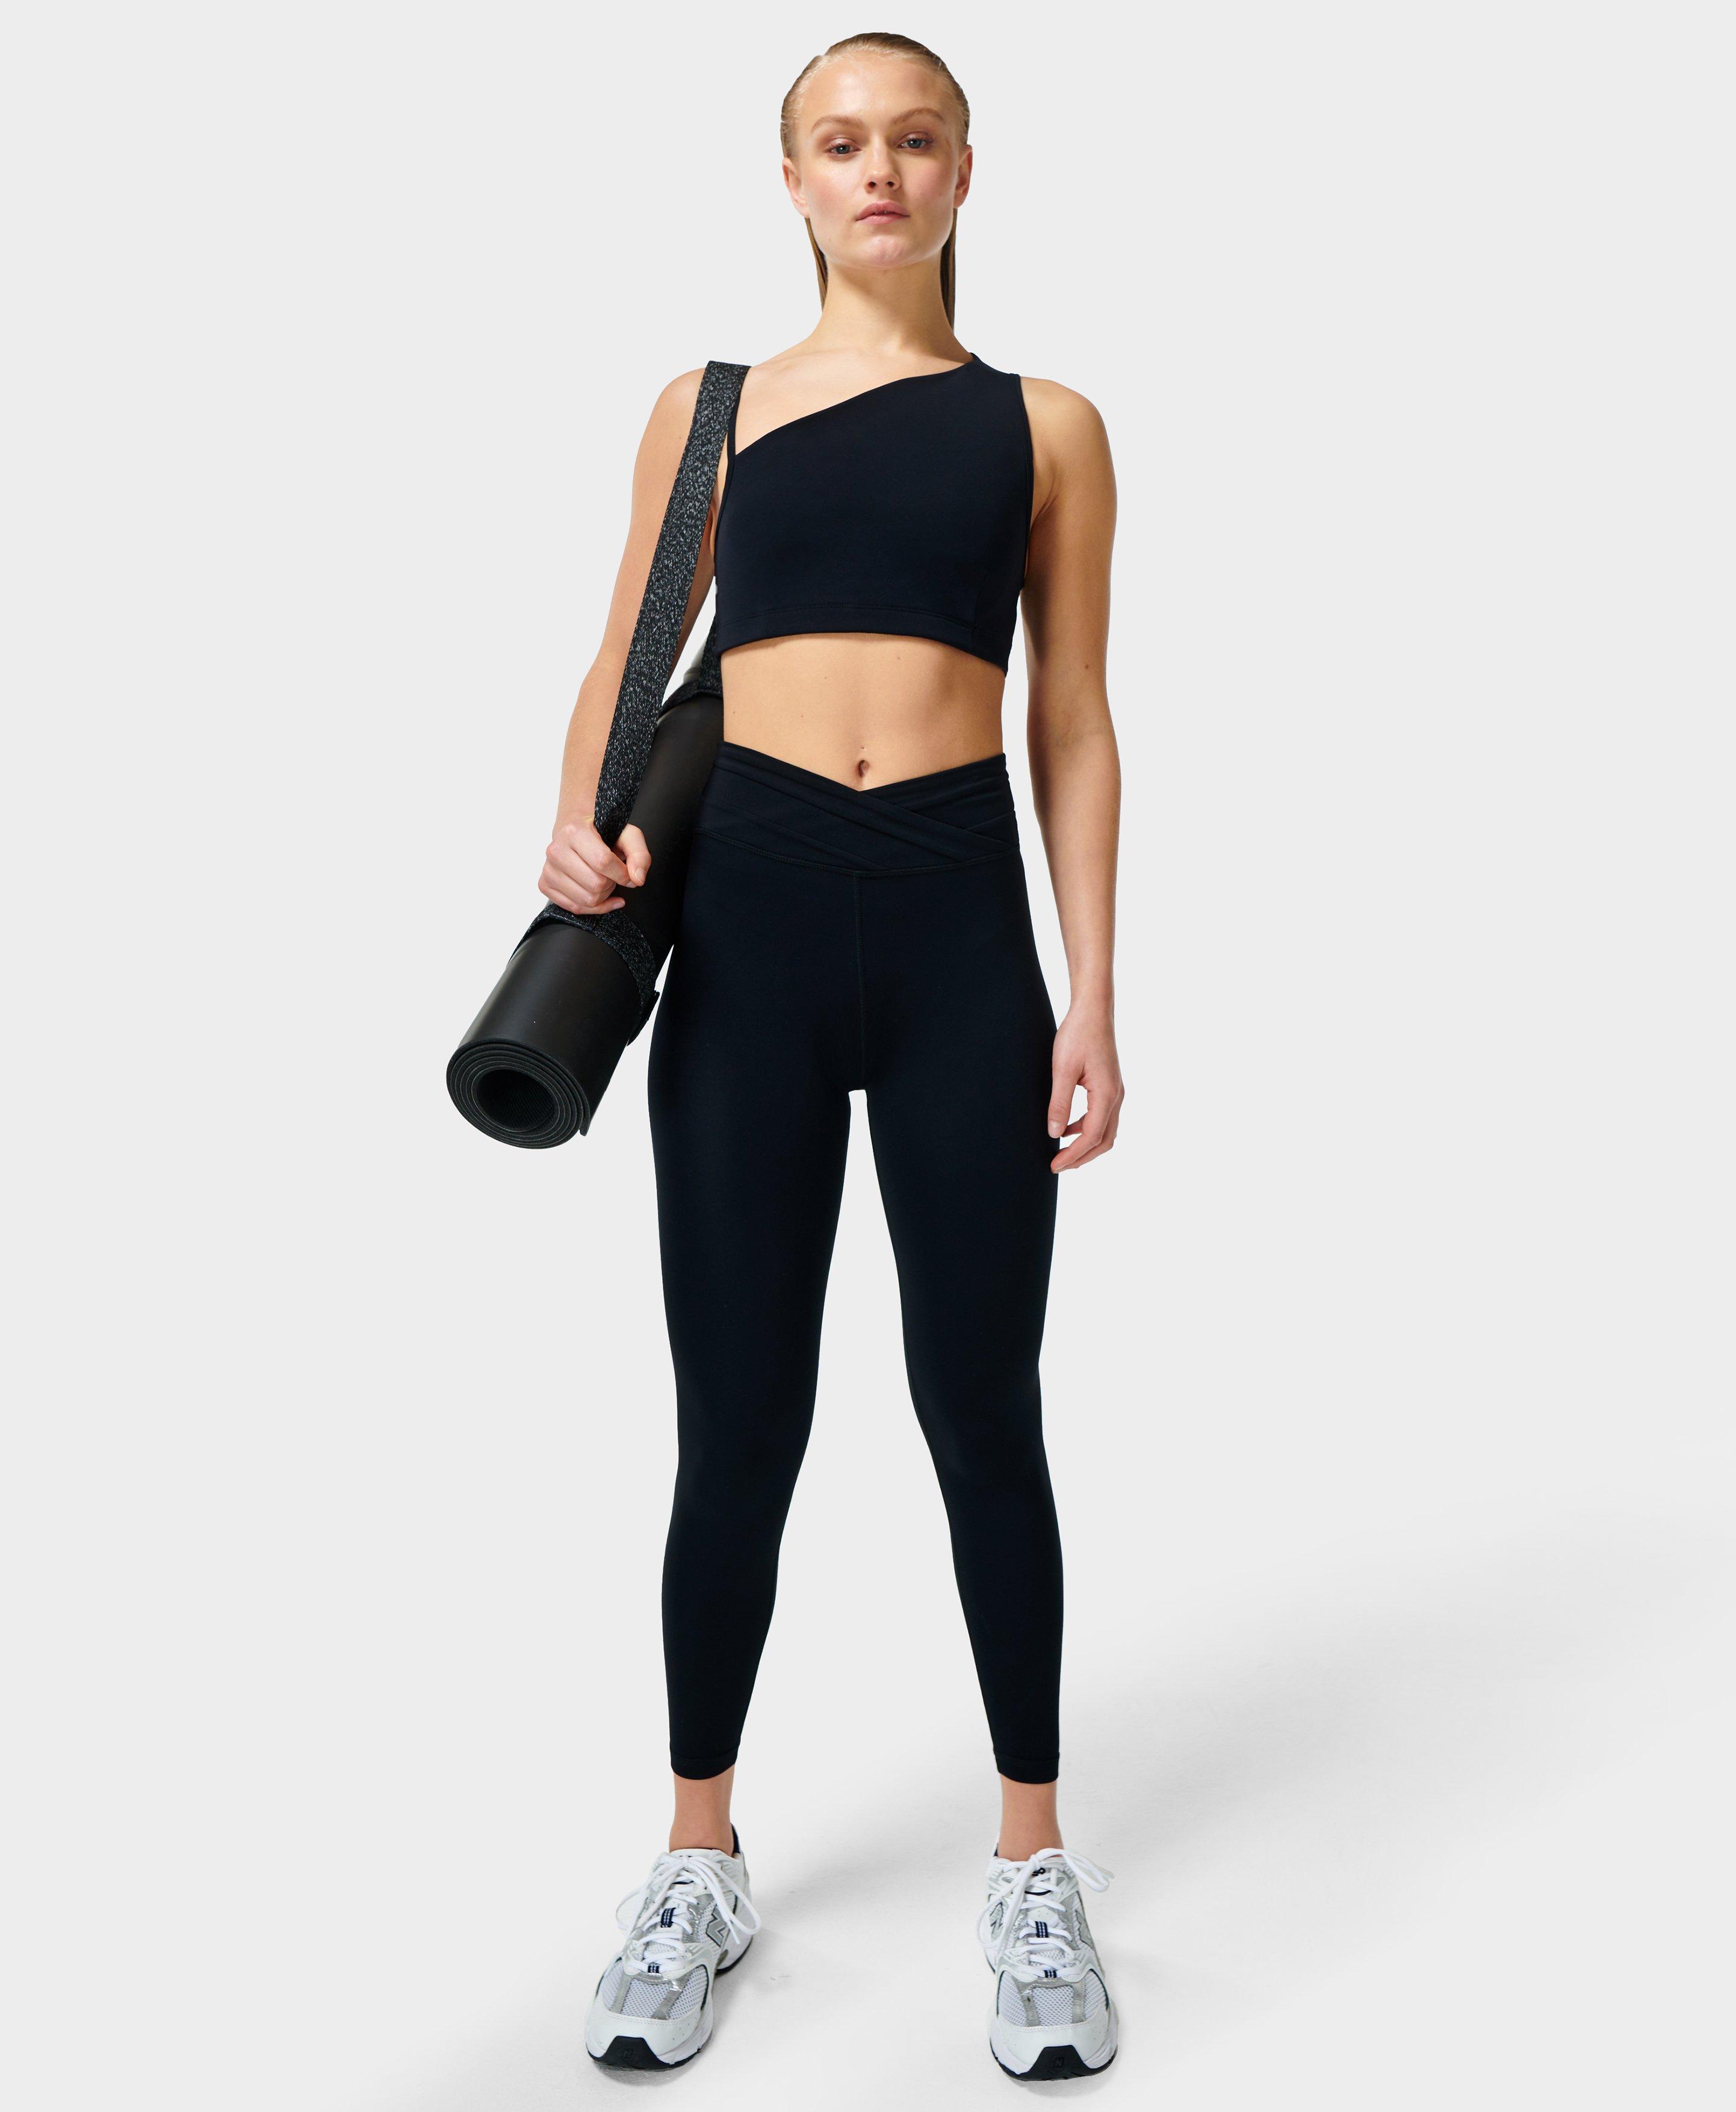 US, Women's Fitness - Wrap Pants - Black, Workout Pants Women